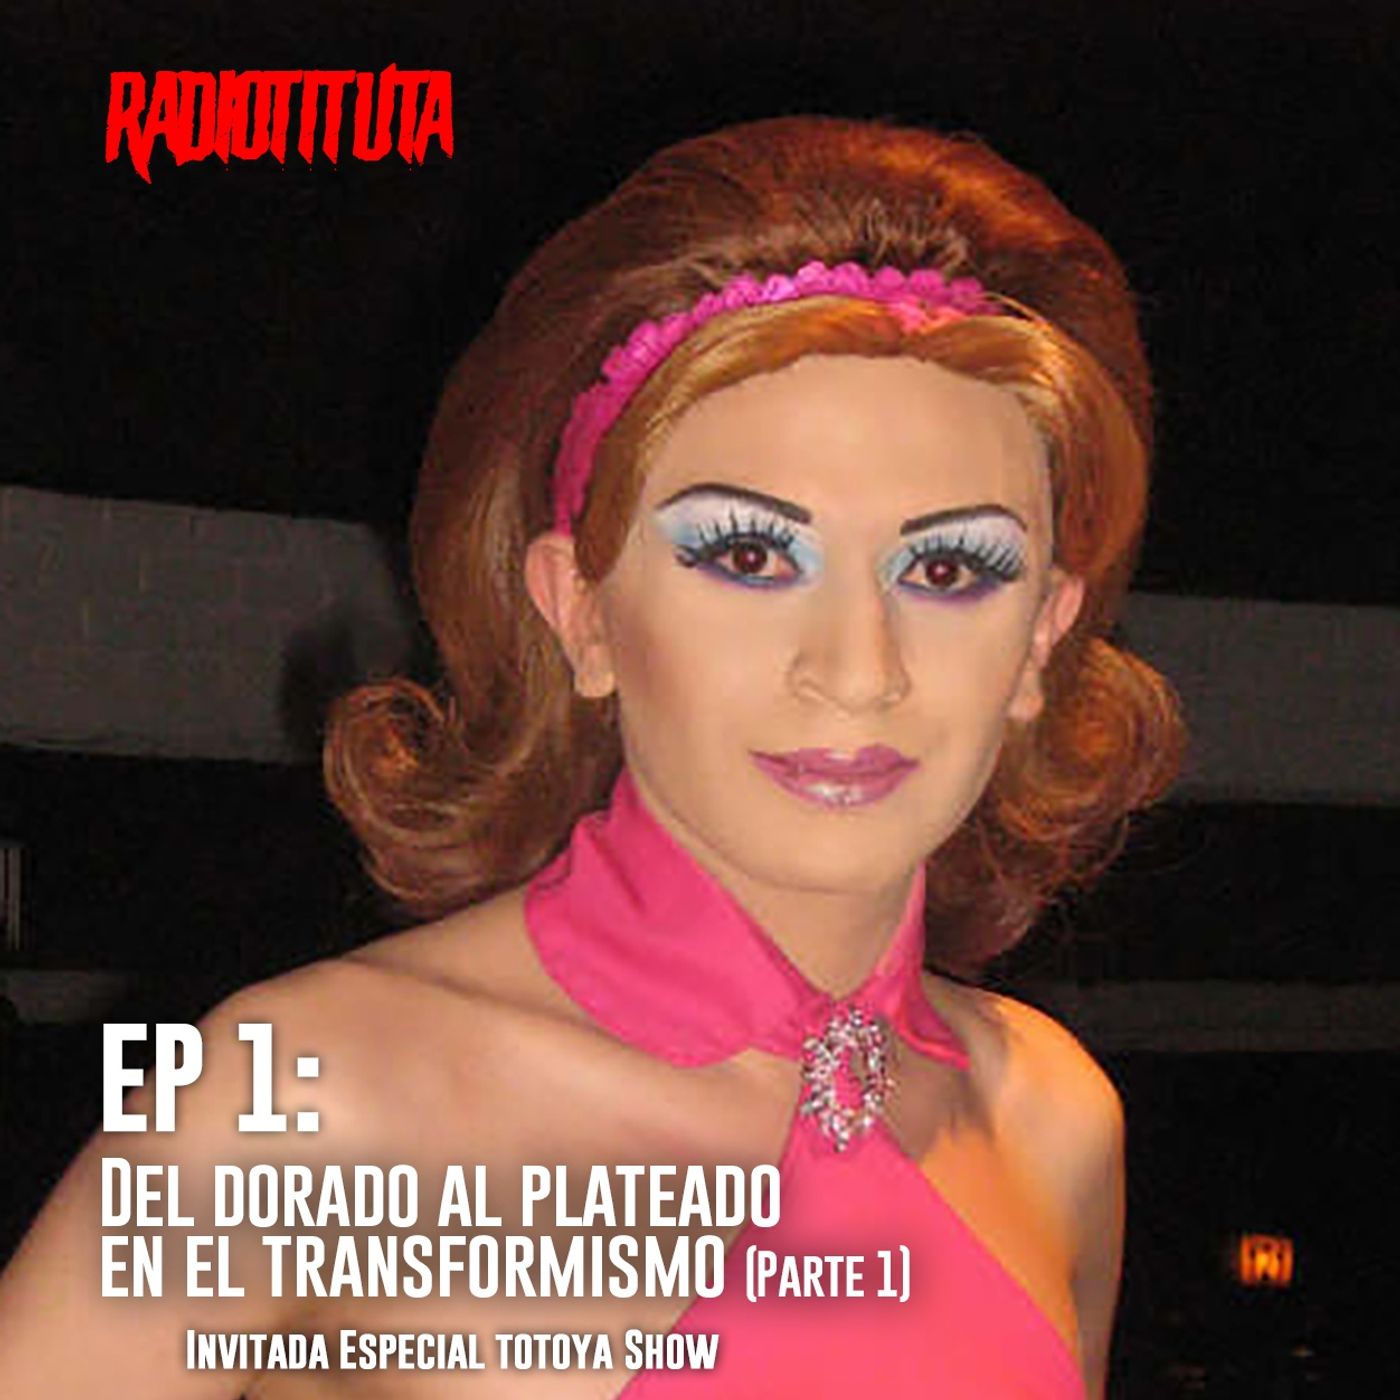 EP 1 -T3: "Del dorado al plateado en el transformismo" | Invitada especial Totoya Show (Parte 1)